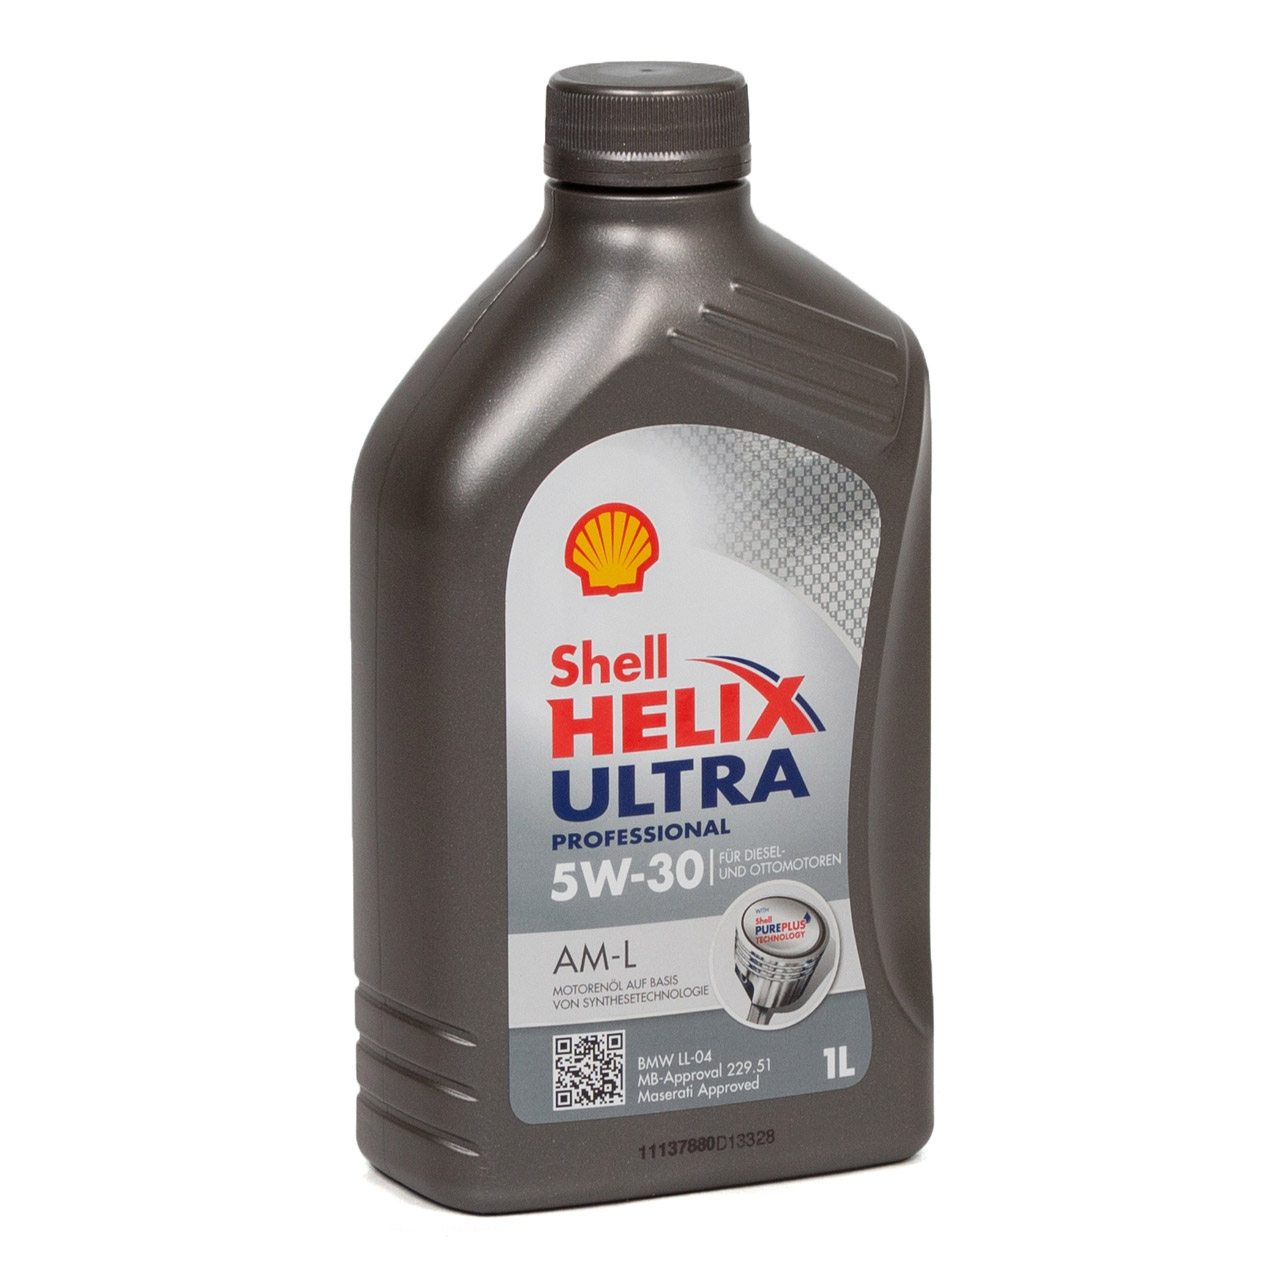 6L 6 Liter SHELL Motoröl Öl HELIX ULTRA Professional AM-L 5W30 für BMW LL-04